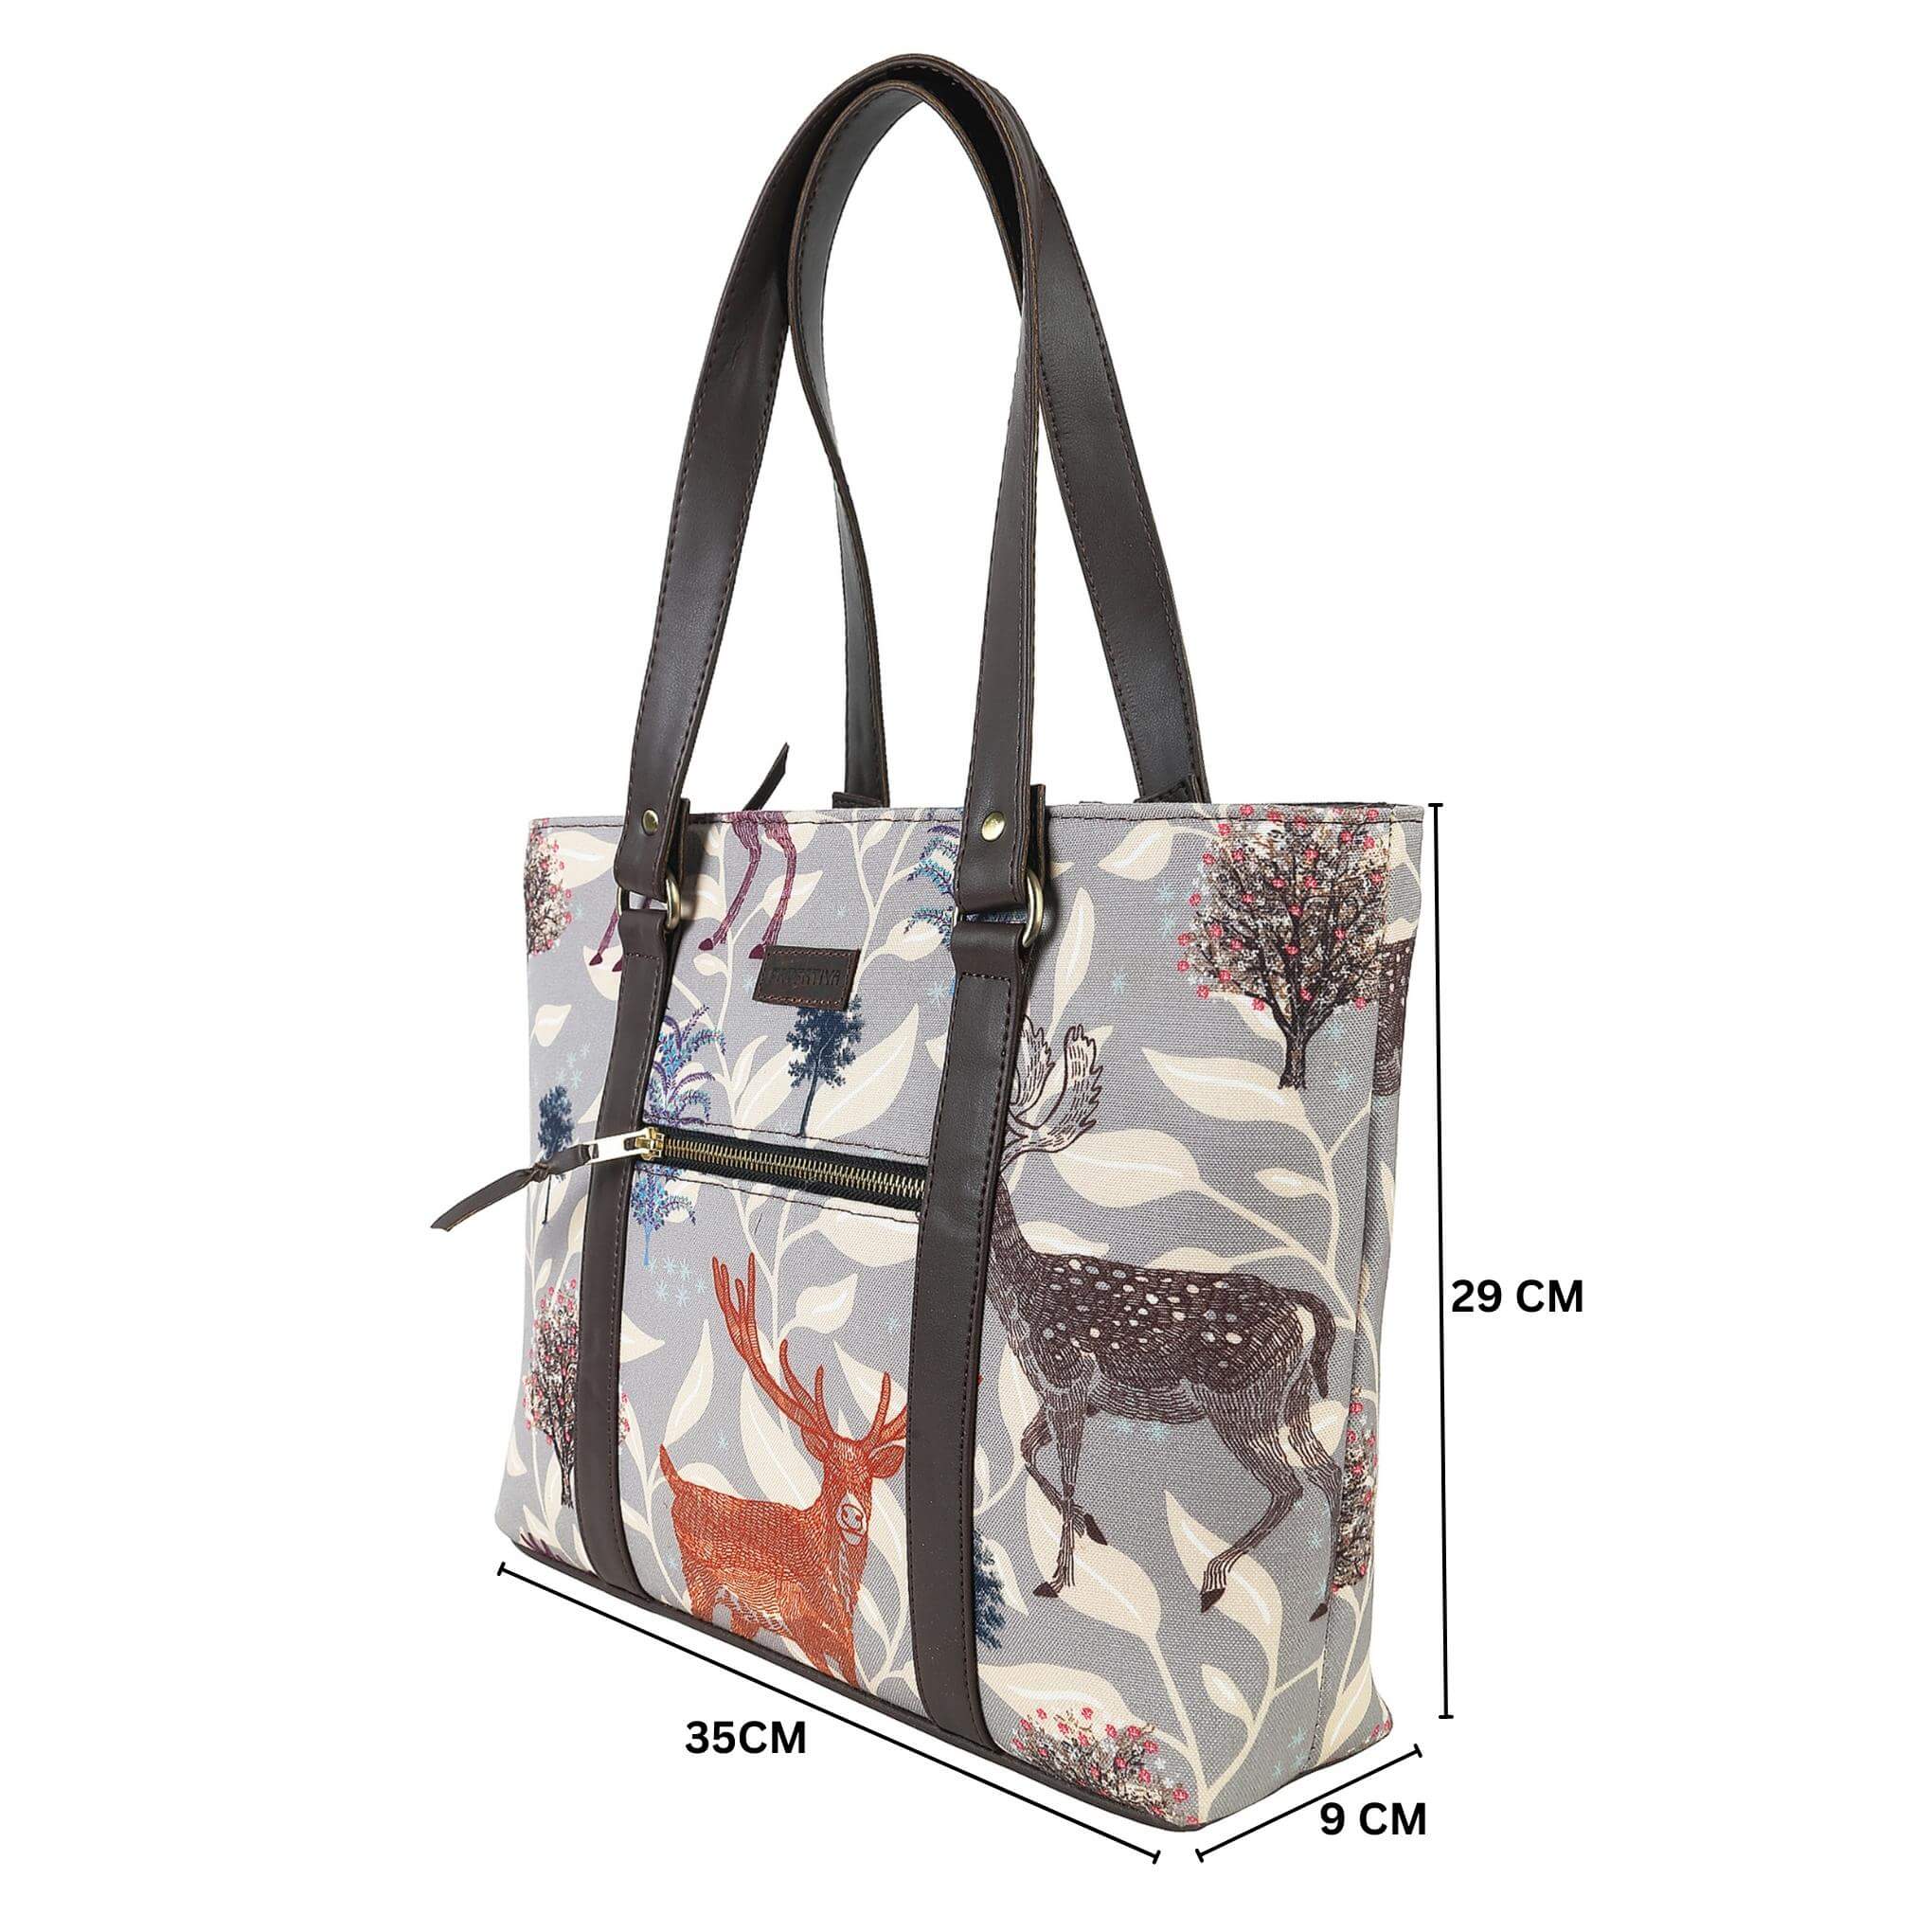 Buy Printed Designer Shopping Bag Online - Fatfatiya